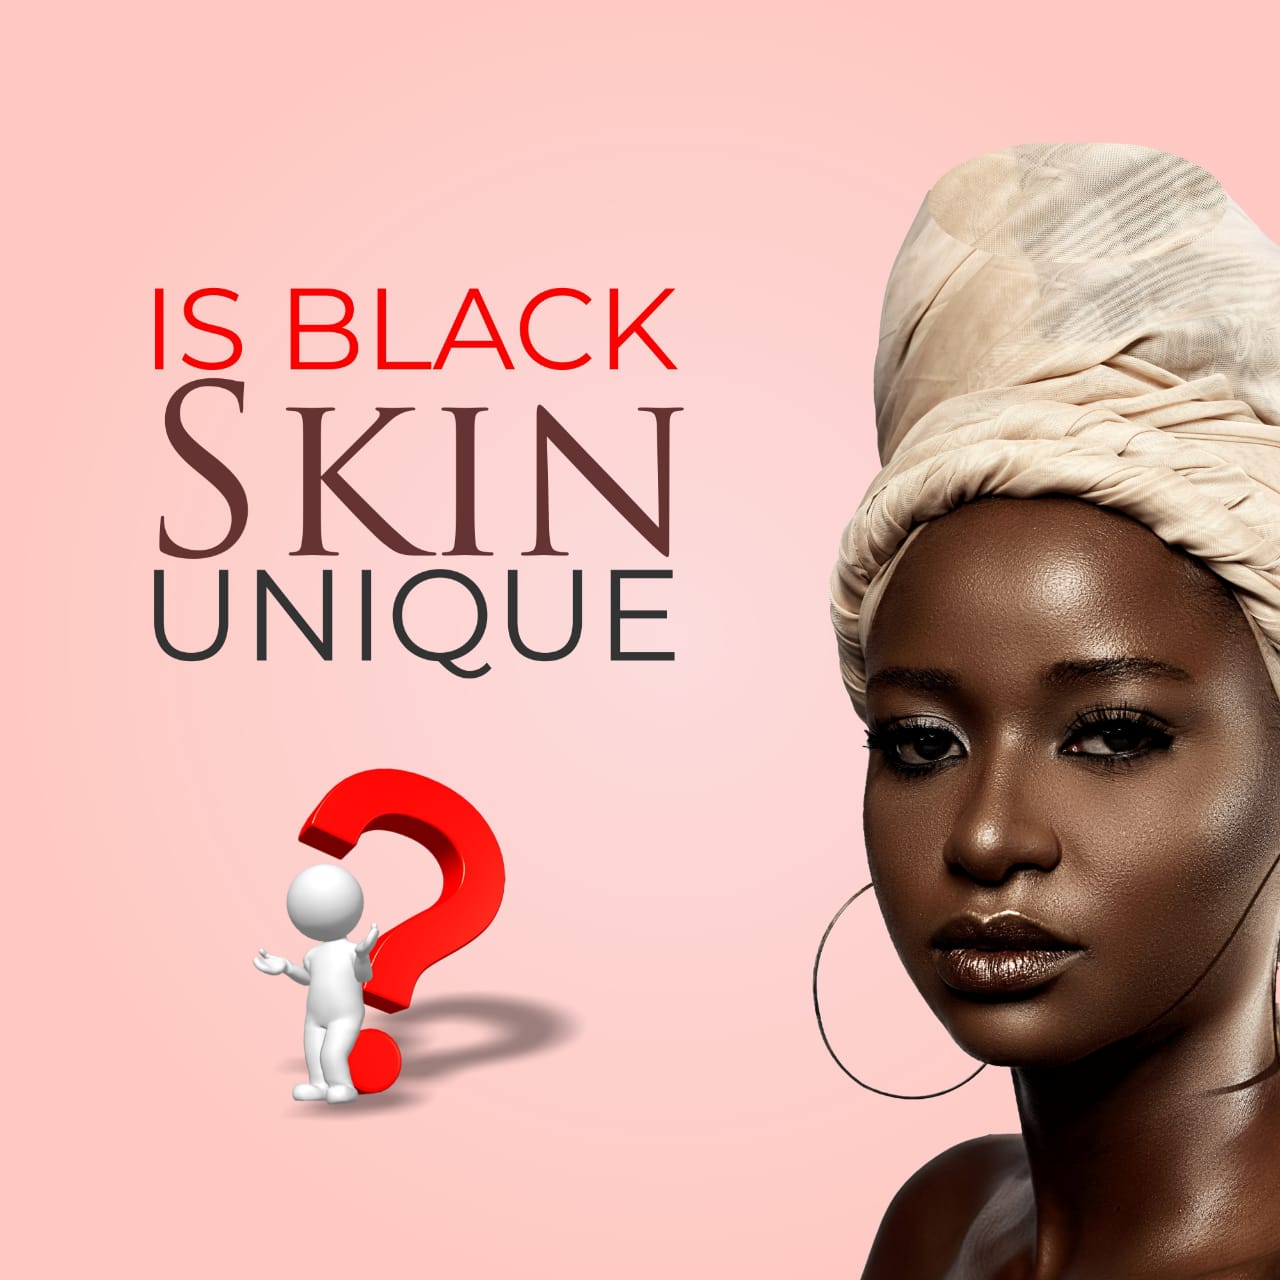 Is black skin unique